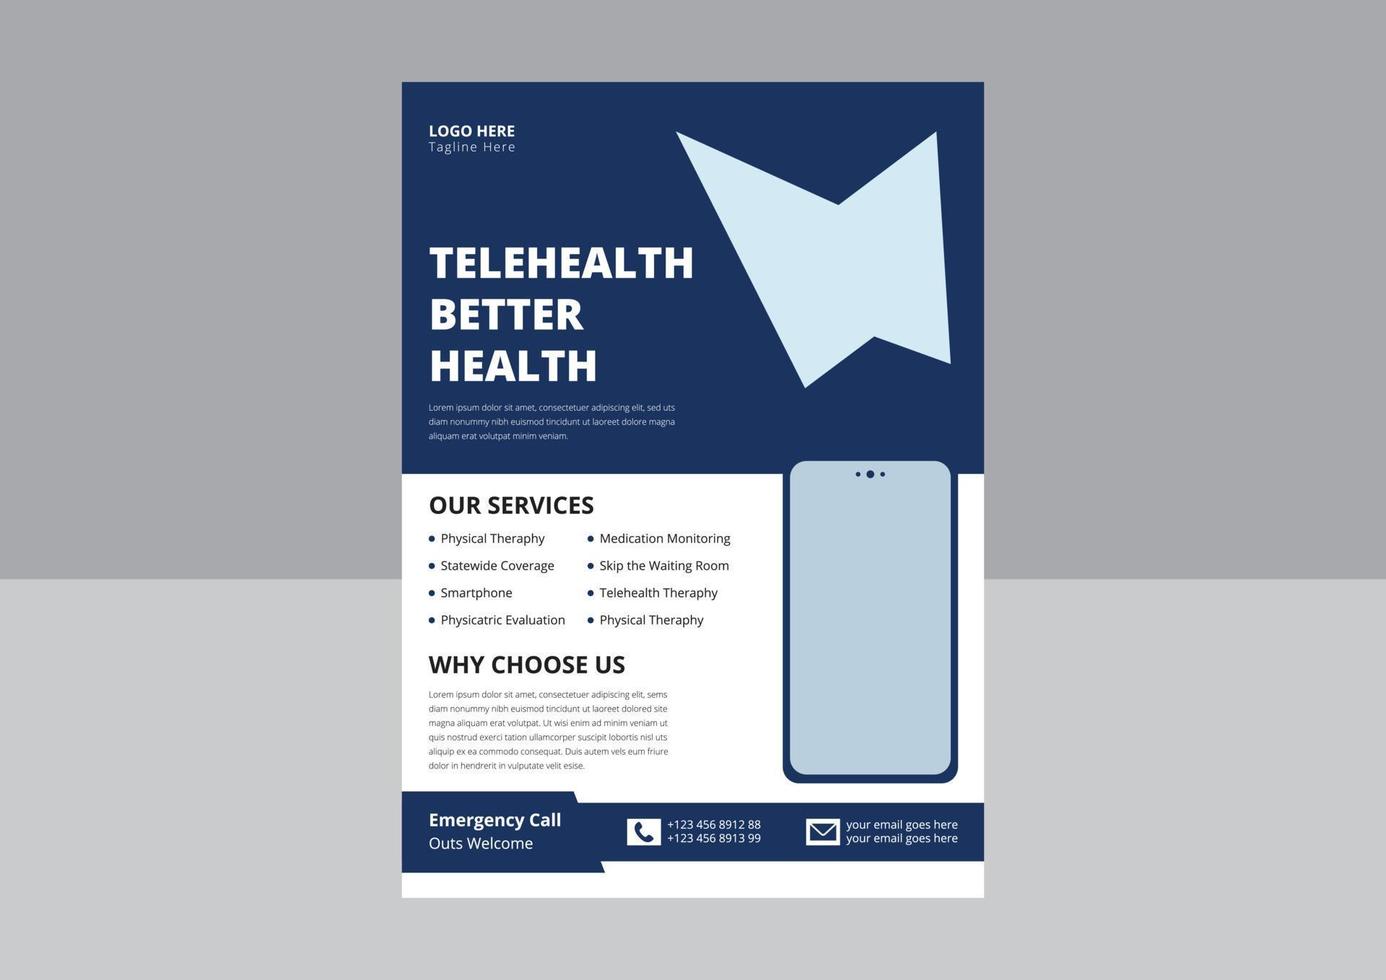 telehealth flygblad designmall. online medicin guide affisch broschyr designmall. design av flygblad för telemedicin. omslag, flygblad design vektor